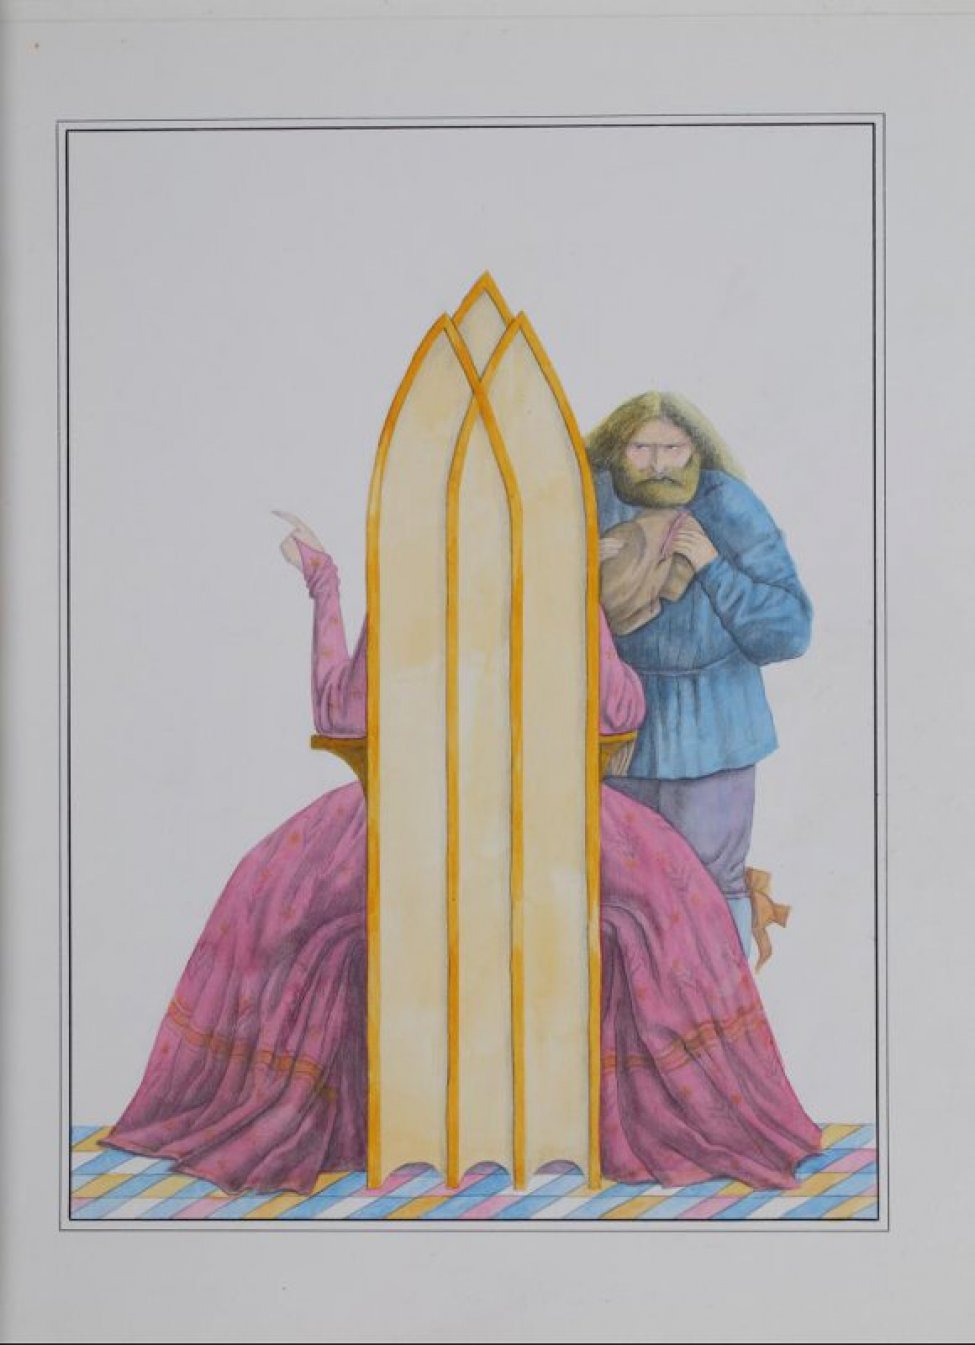 Изображена со спины сидящая на троне женщина с малиновом платье, перед ней стоит мужчина в синей блузе, сиреневых штанах.